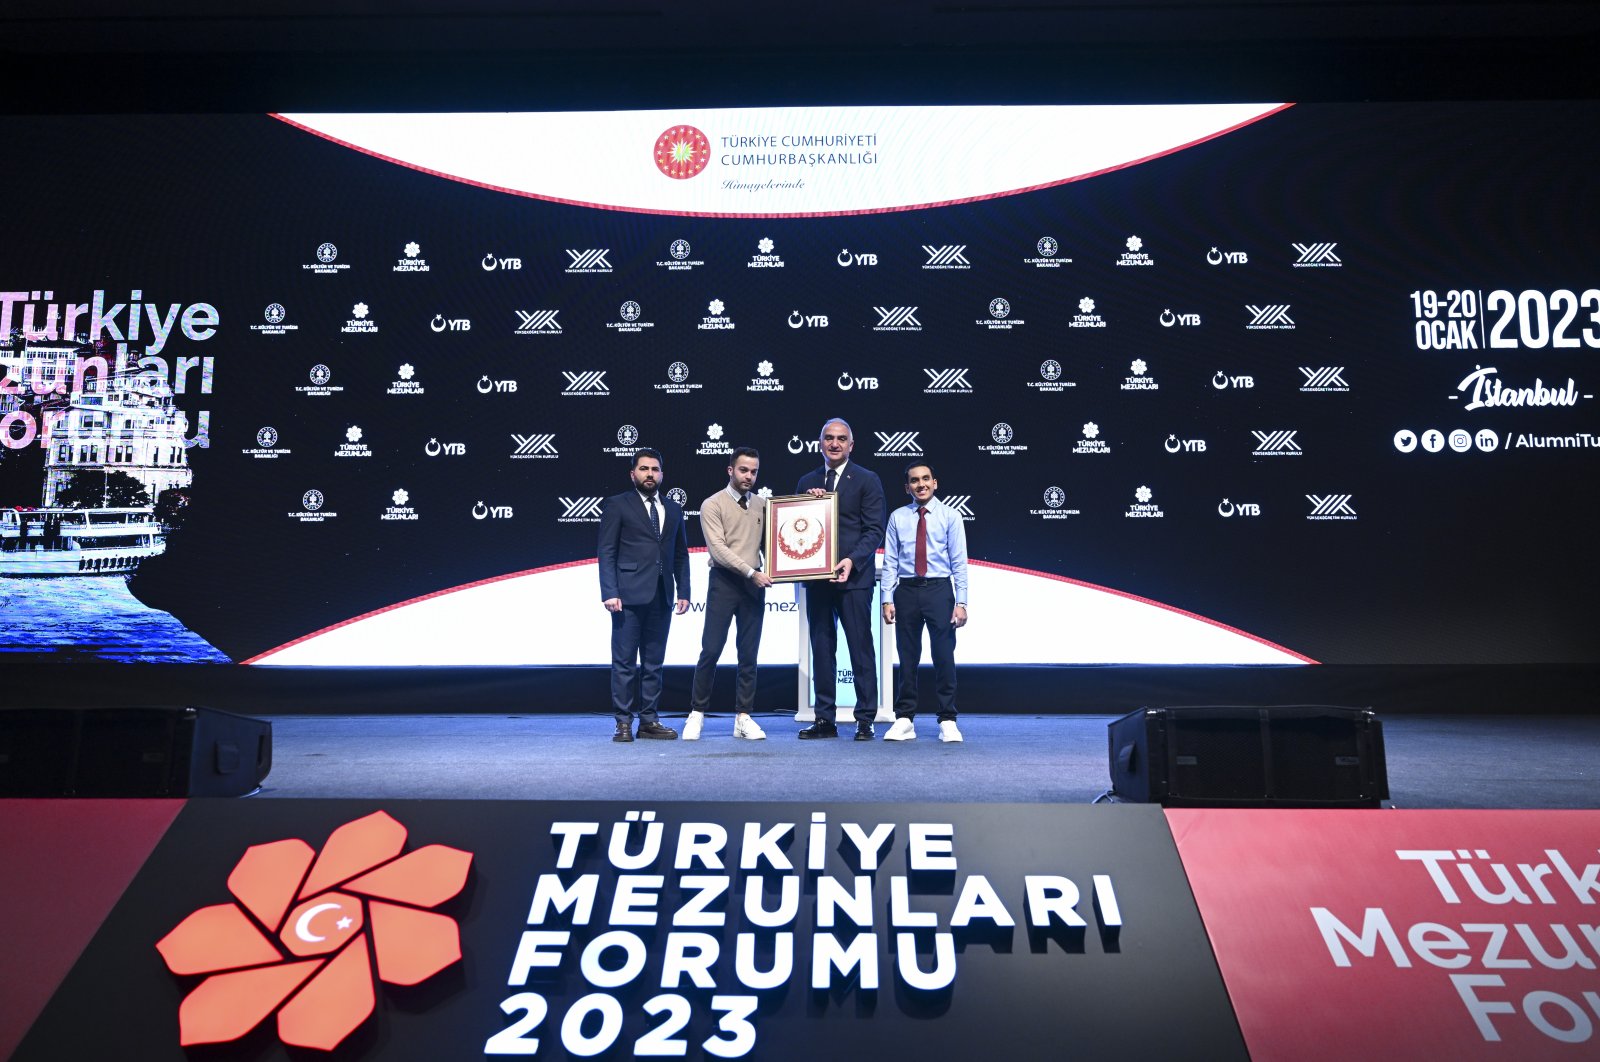 Istanbul akan menjadi tuan rumah Forum Alumni Türkiye